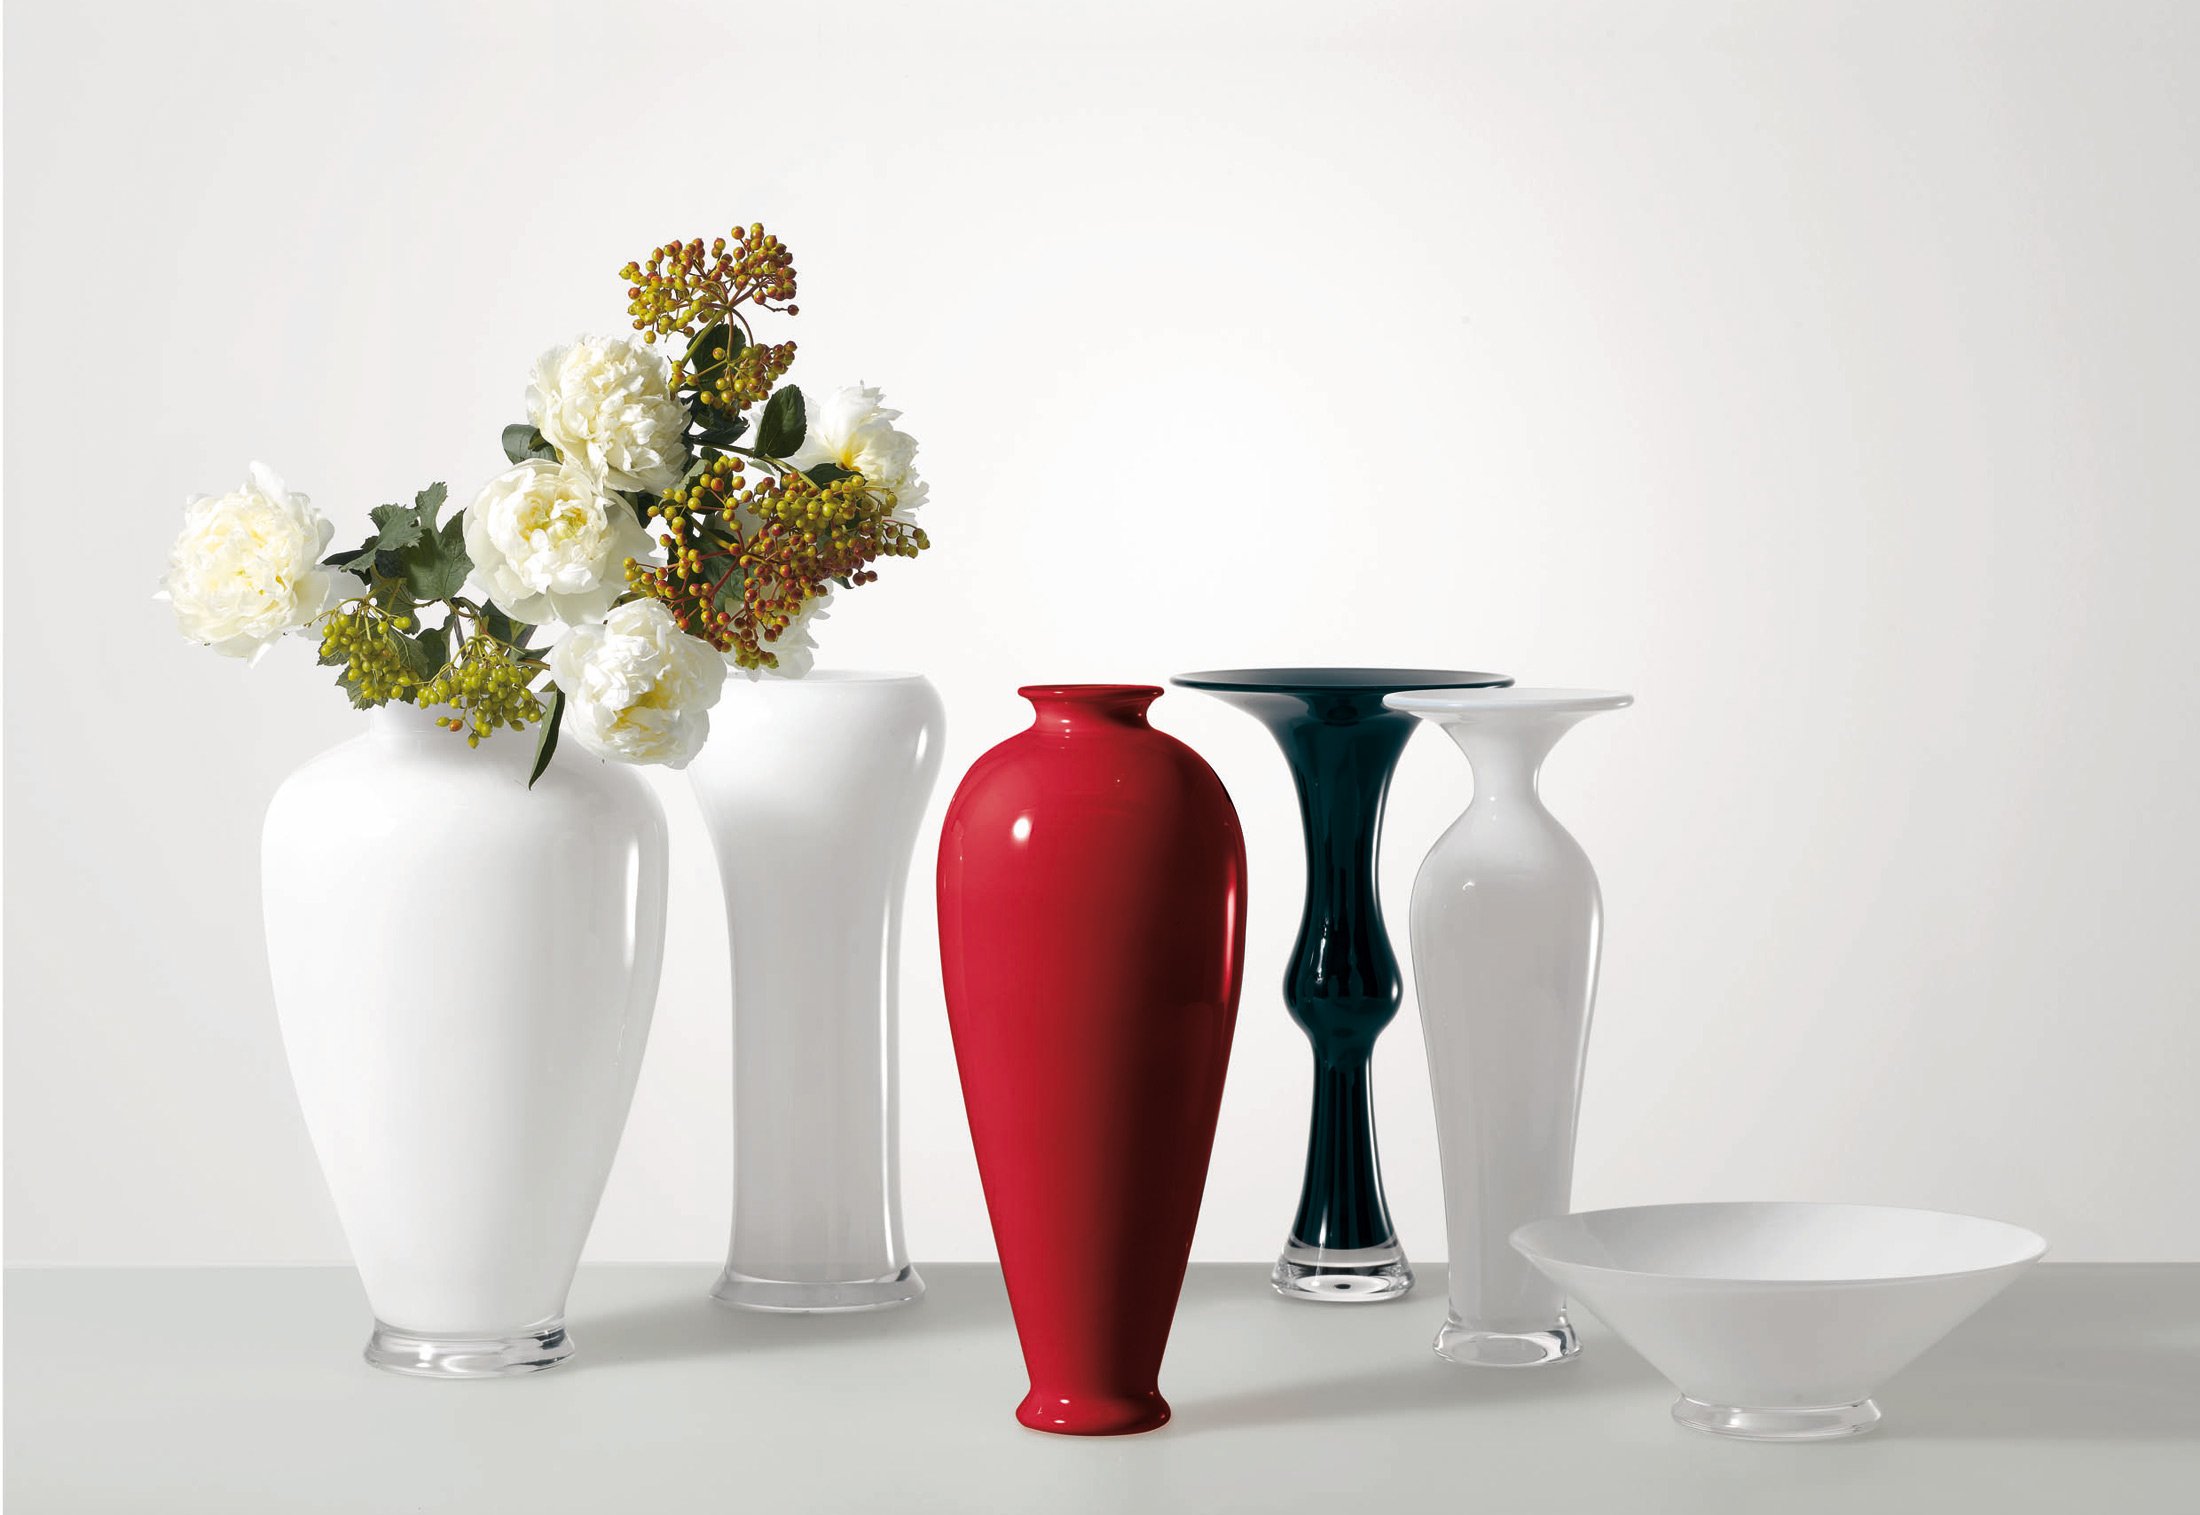 декоративные вазы для интерьера маленькие